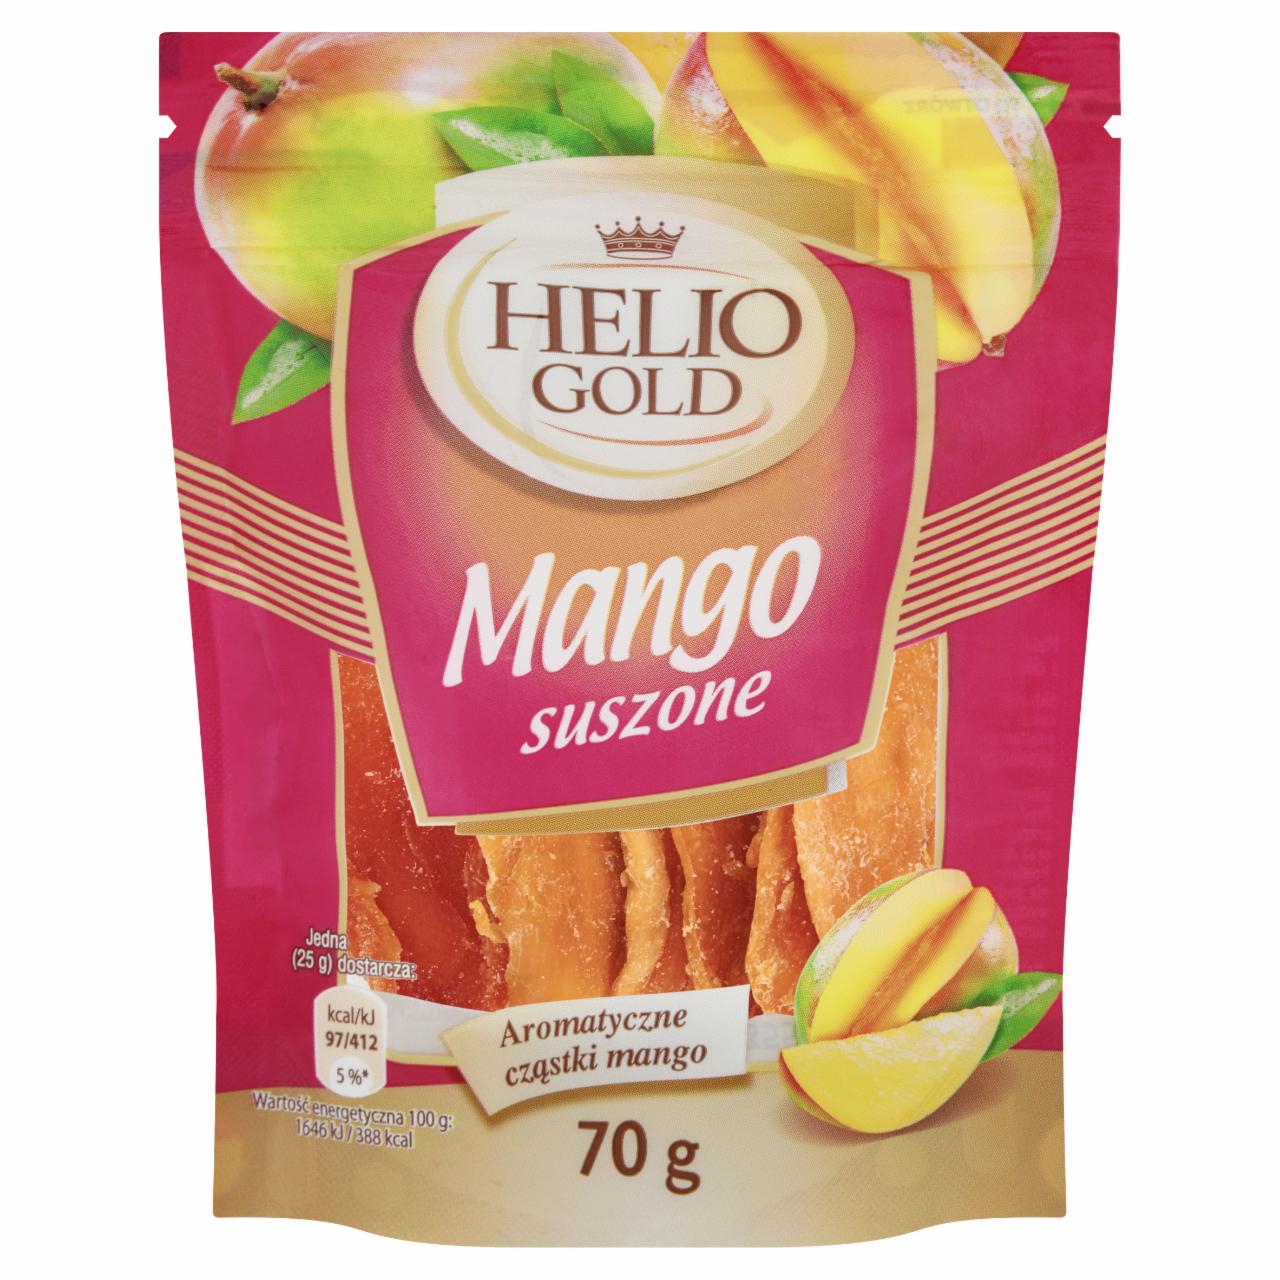 Zdjęcia - Helio Gold Mango suszone 70 g